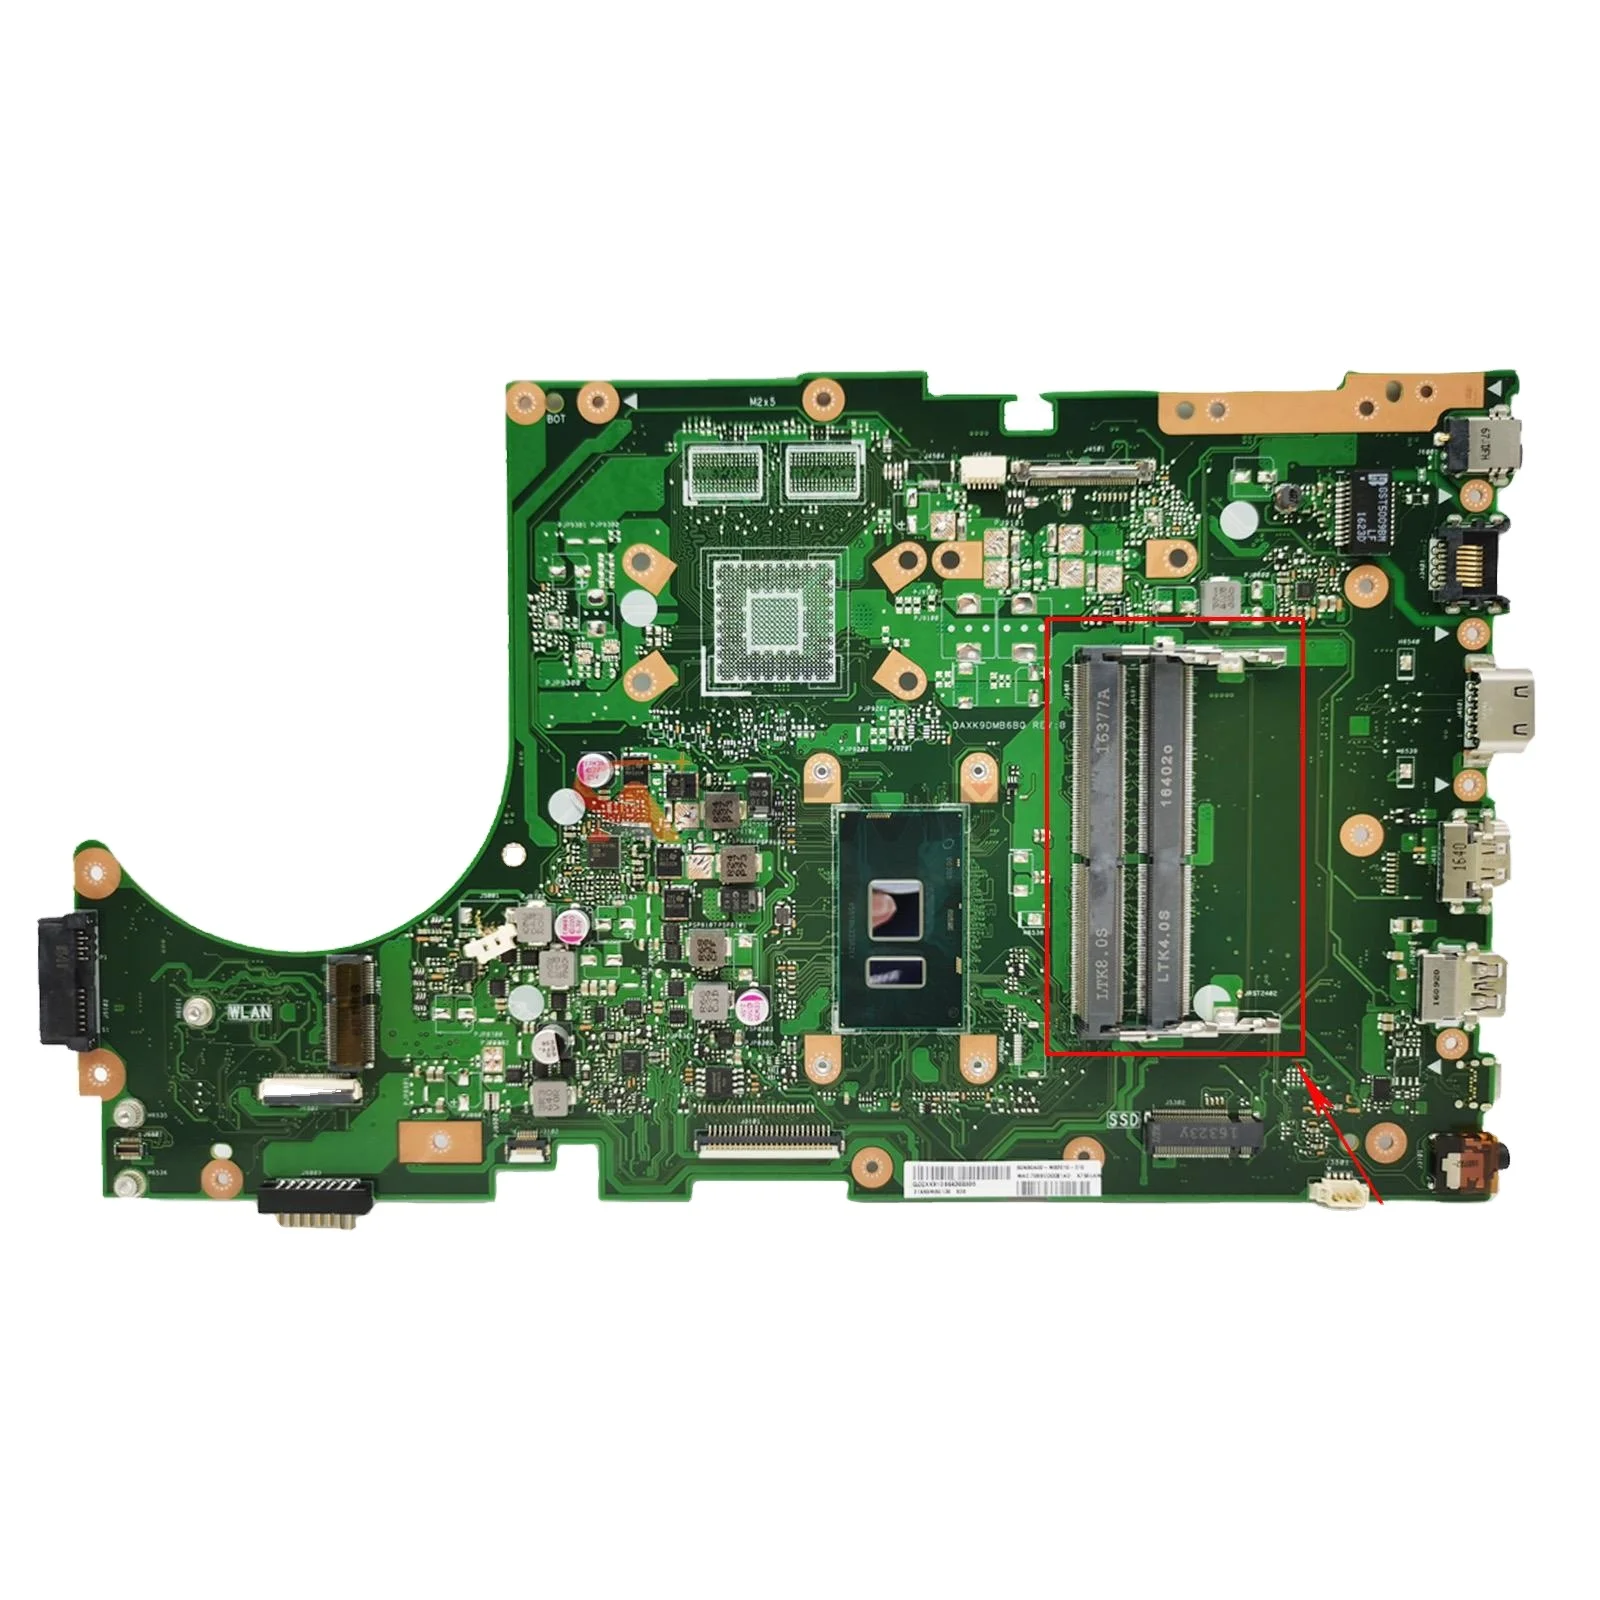 

K756UV Motherboard For Asus X756UV X756UAK X756UA X756UJ X756UXM X756UQK X756UW W/I3- I5-I7-6th CPU DDR4/DDR3 100% Test OK